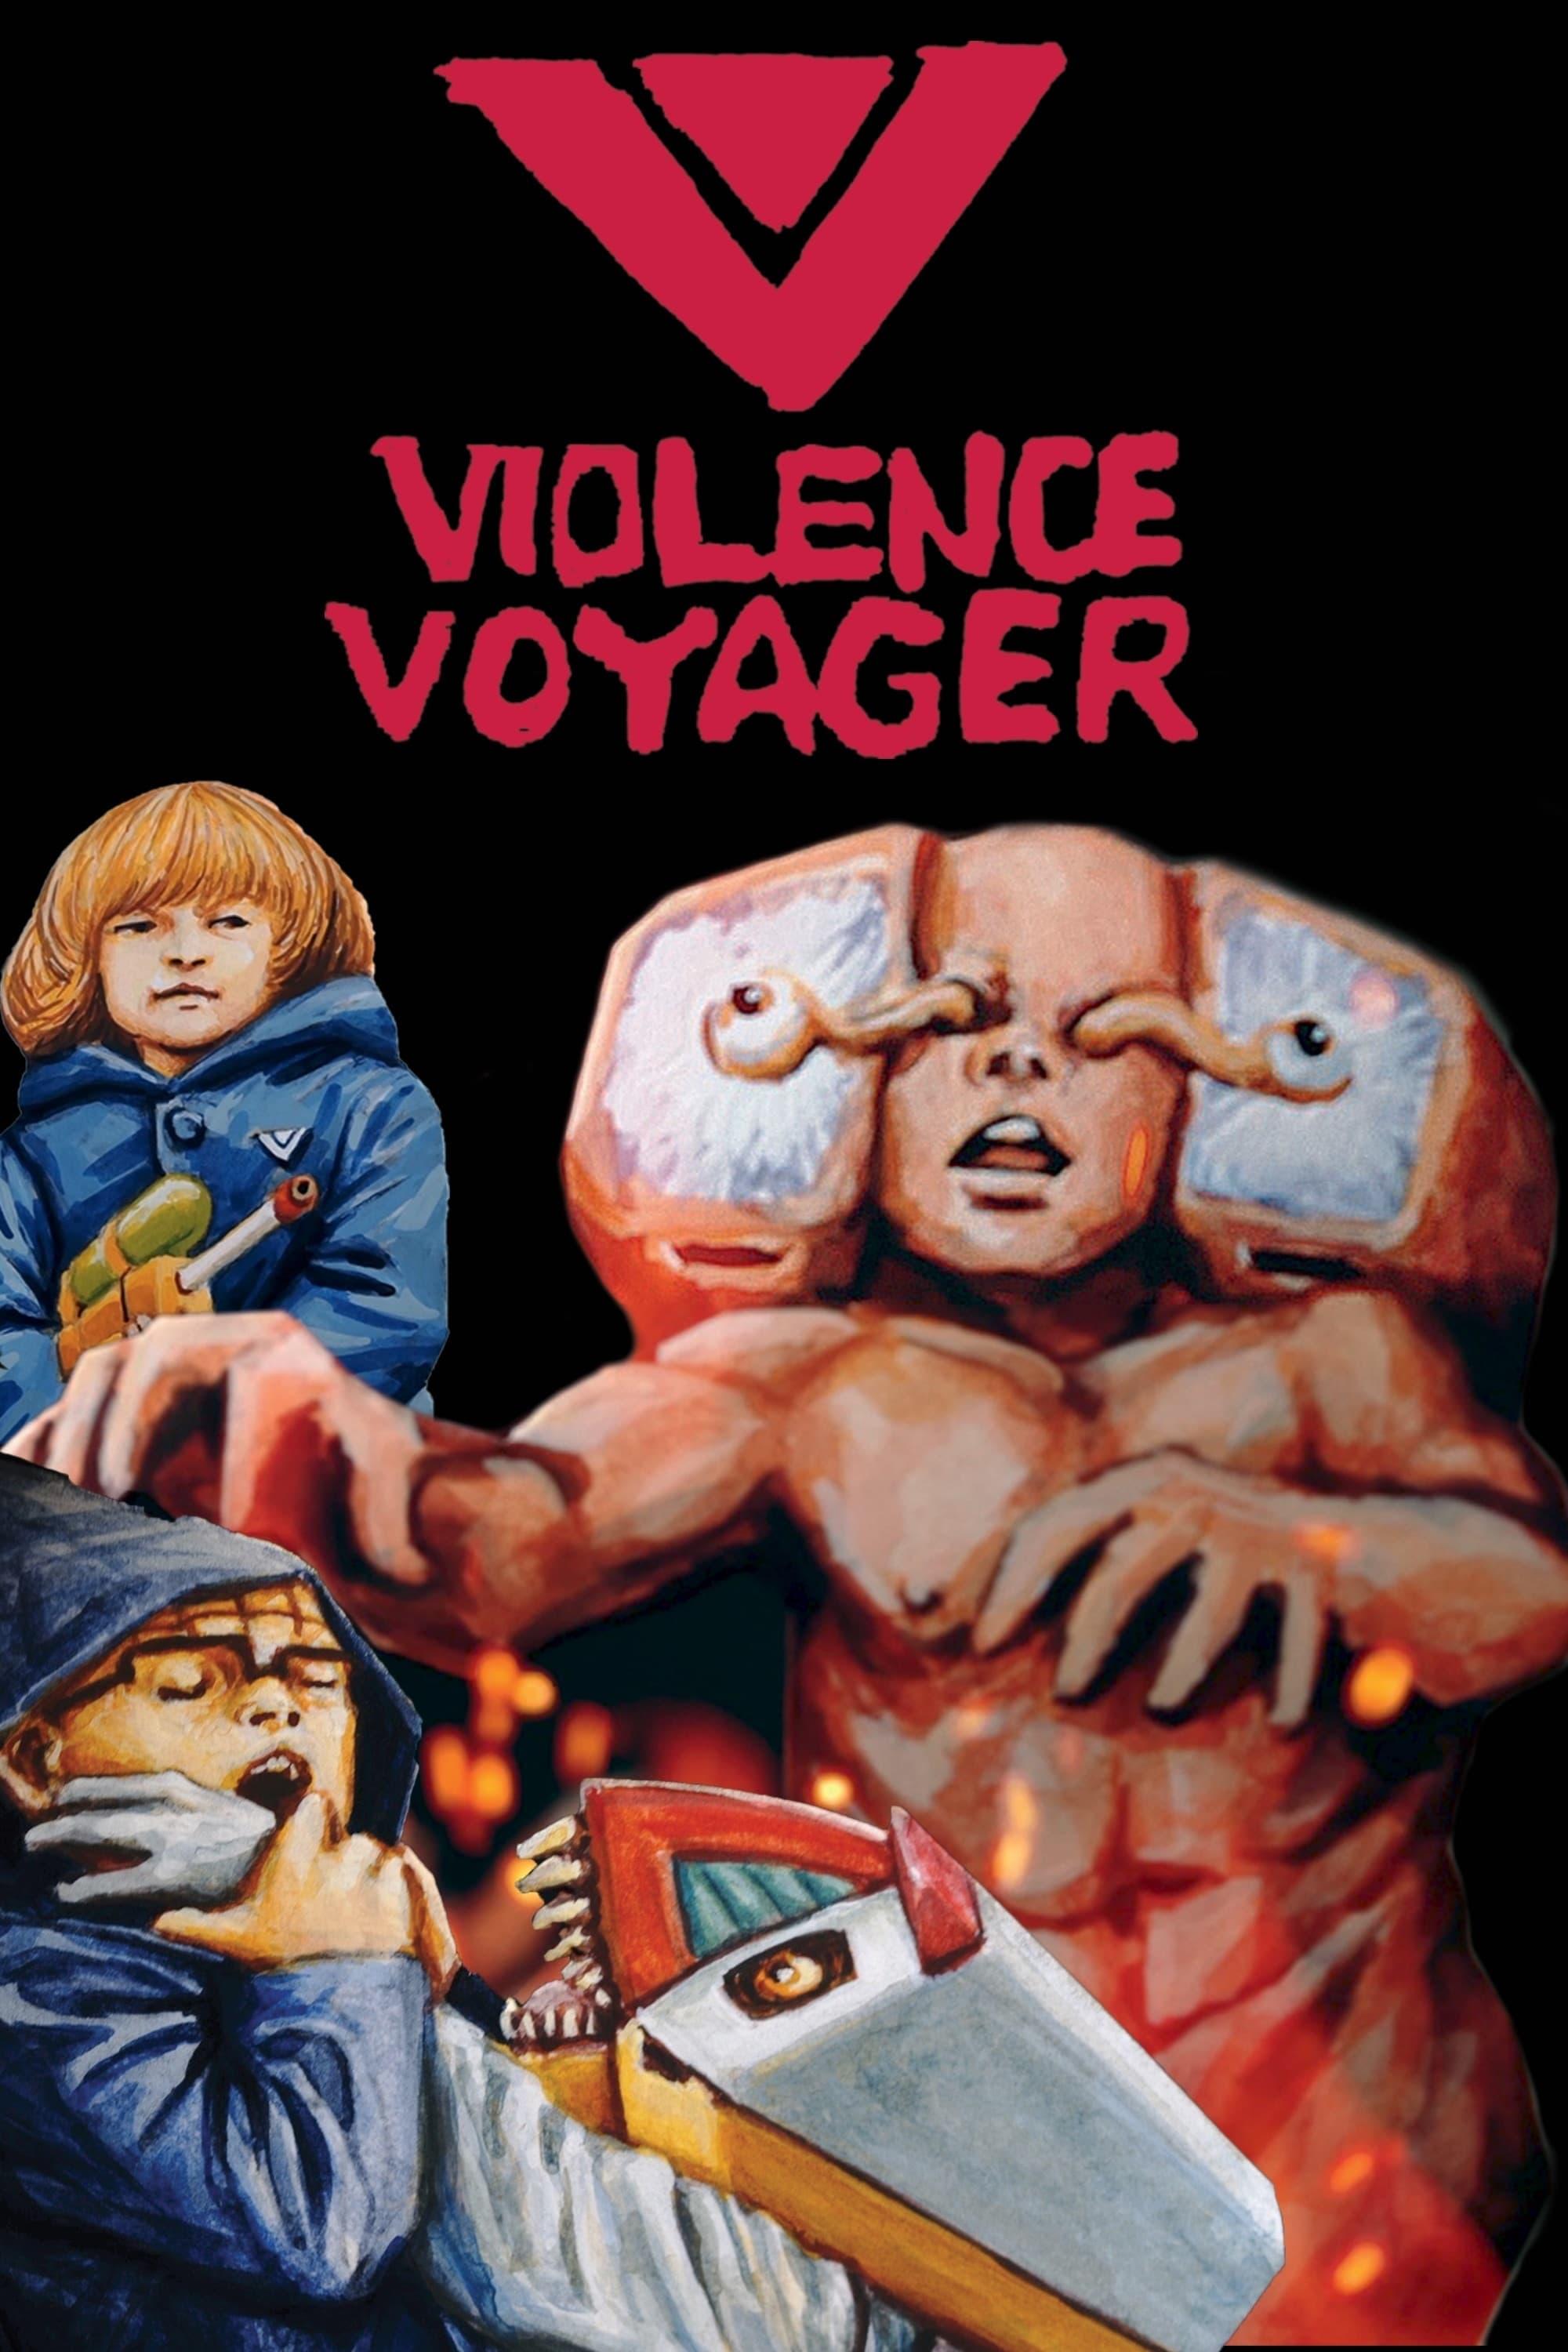 Violence Voyager poster